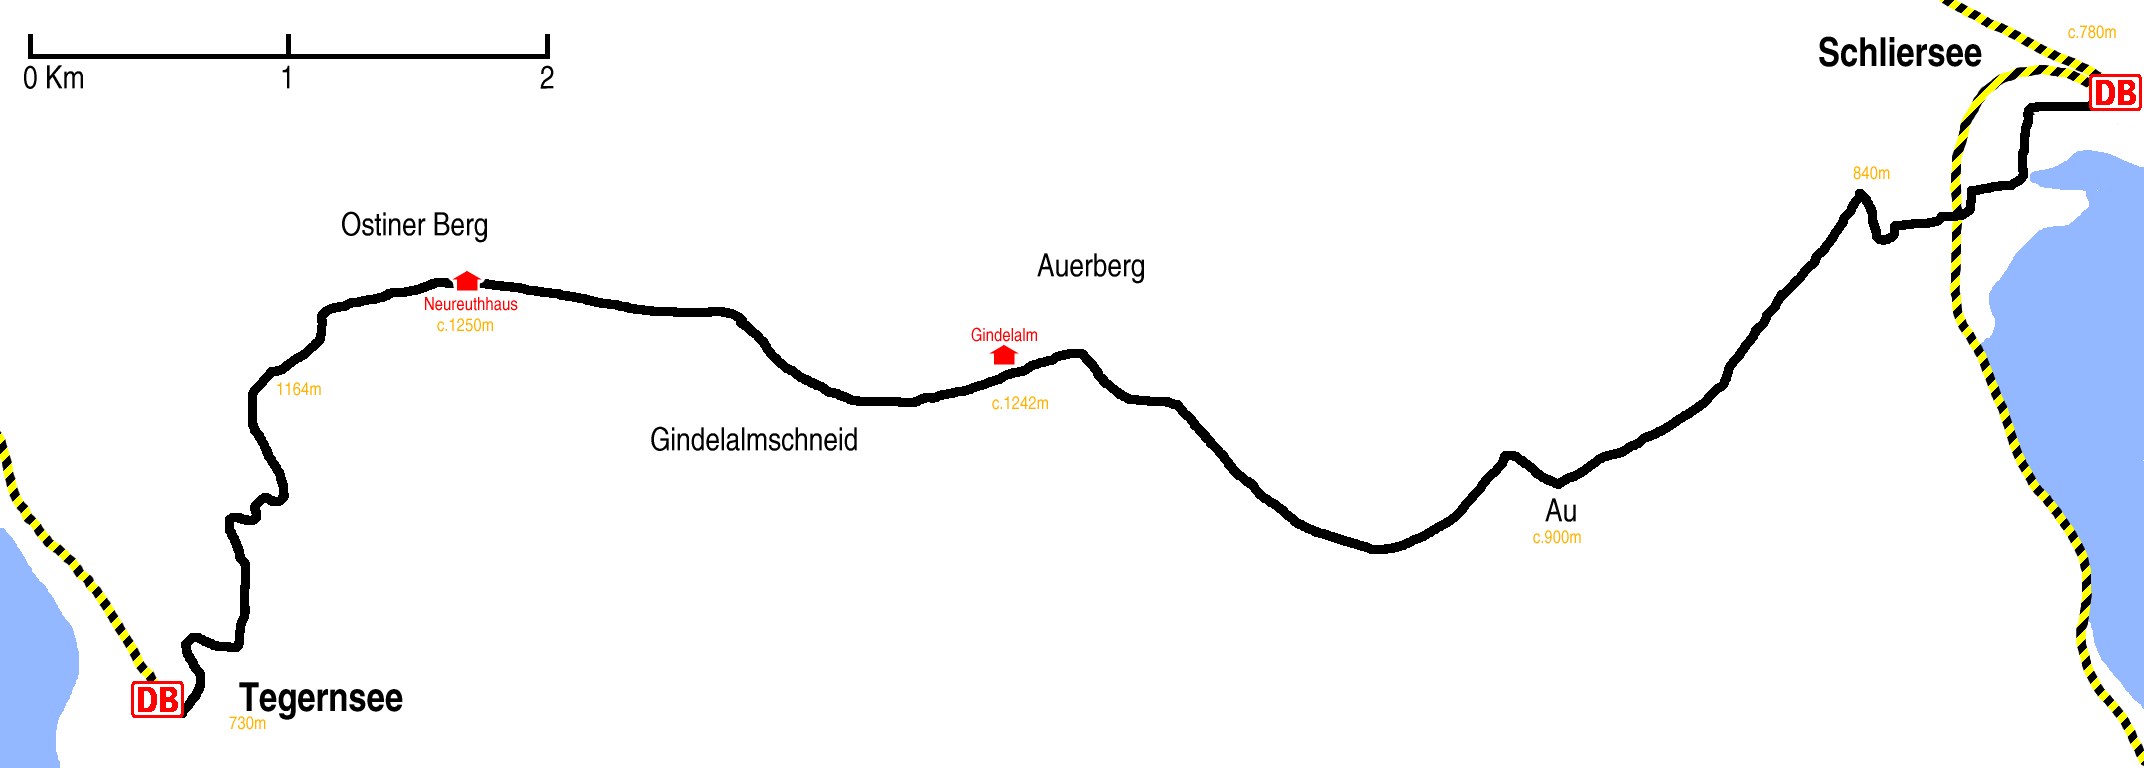 tegernsee-schliersee-map